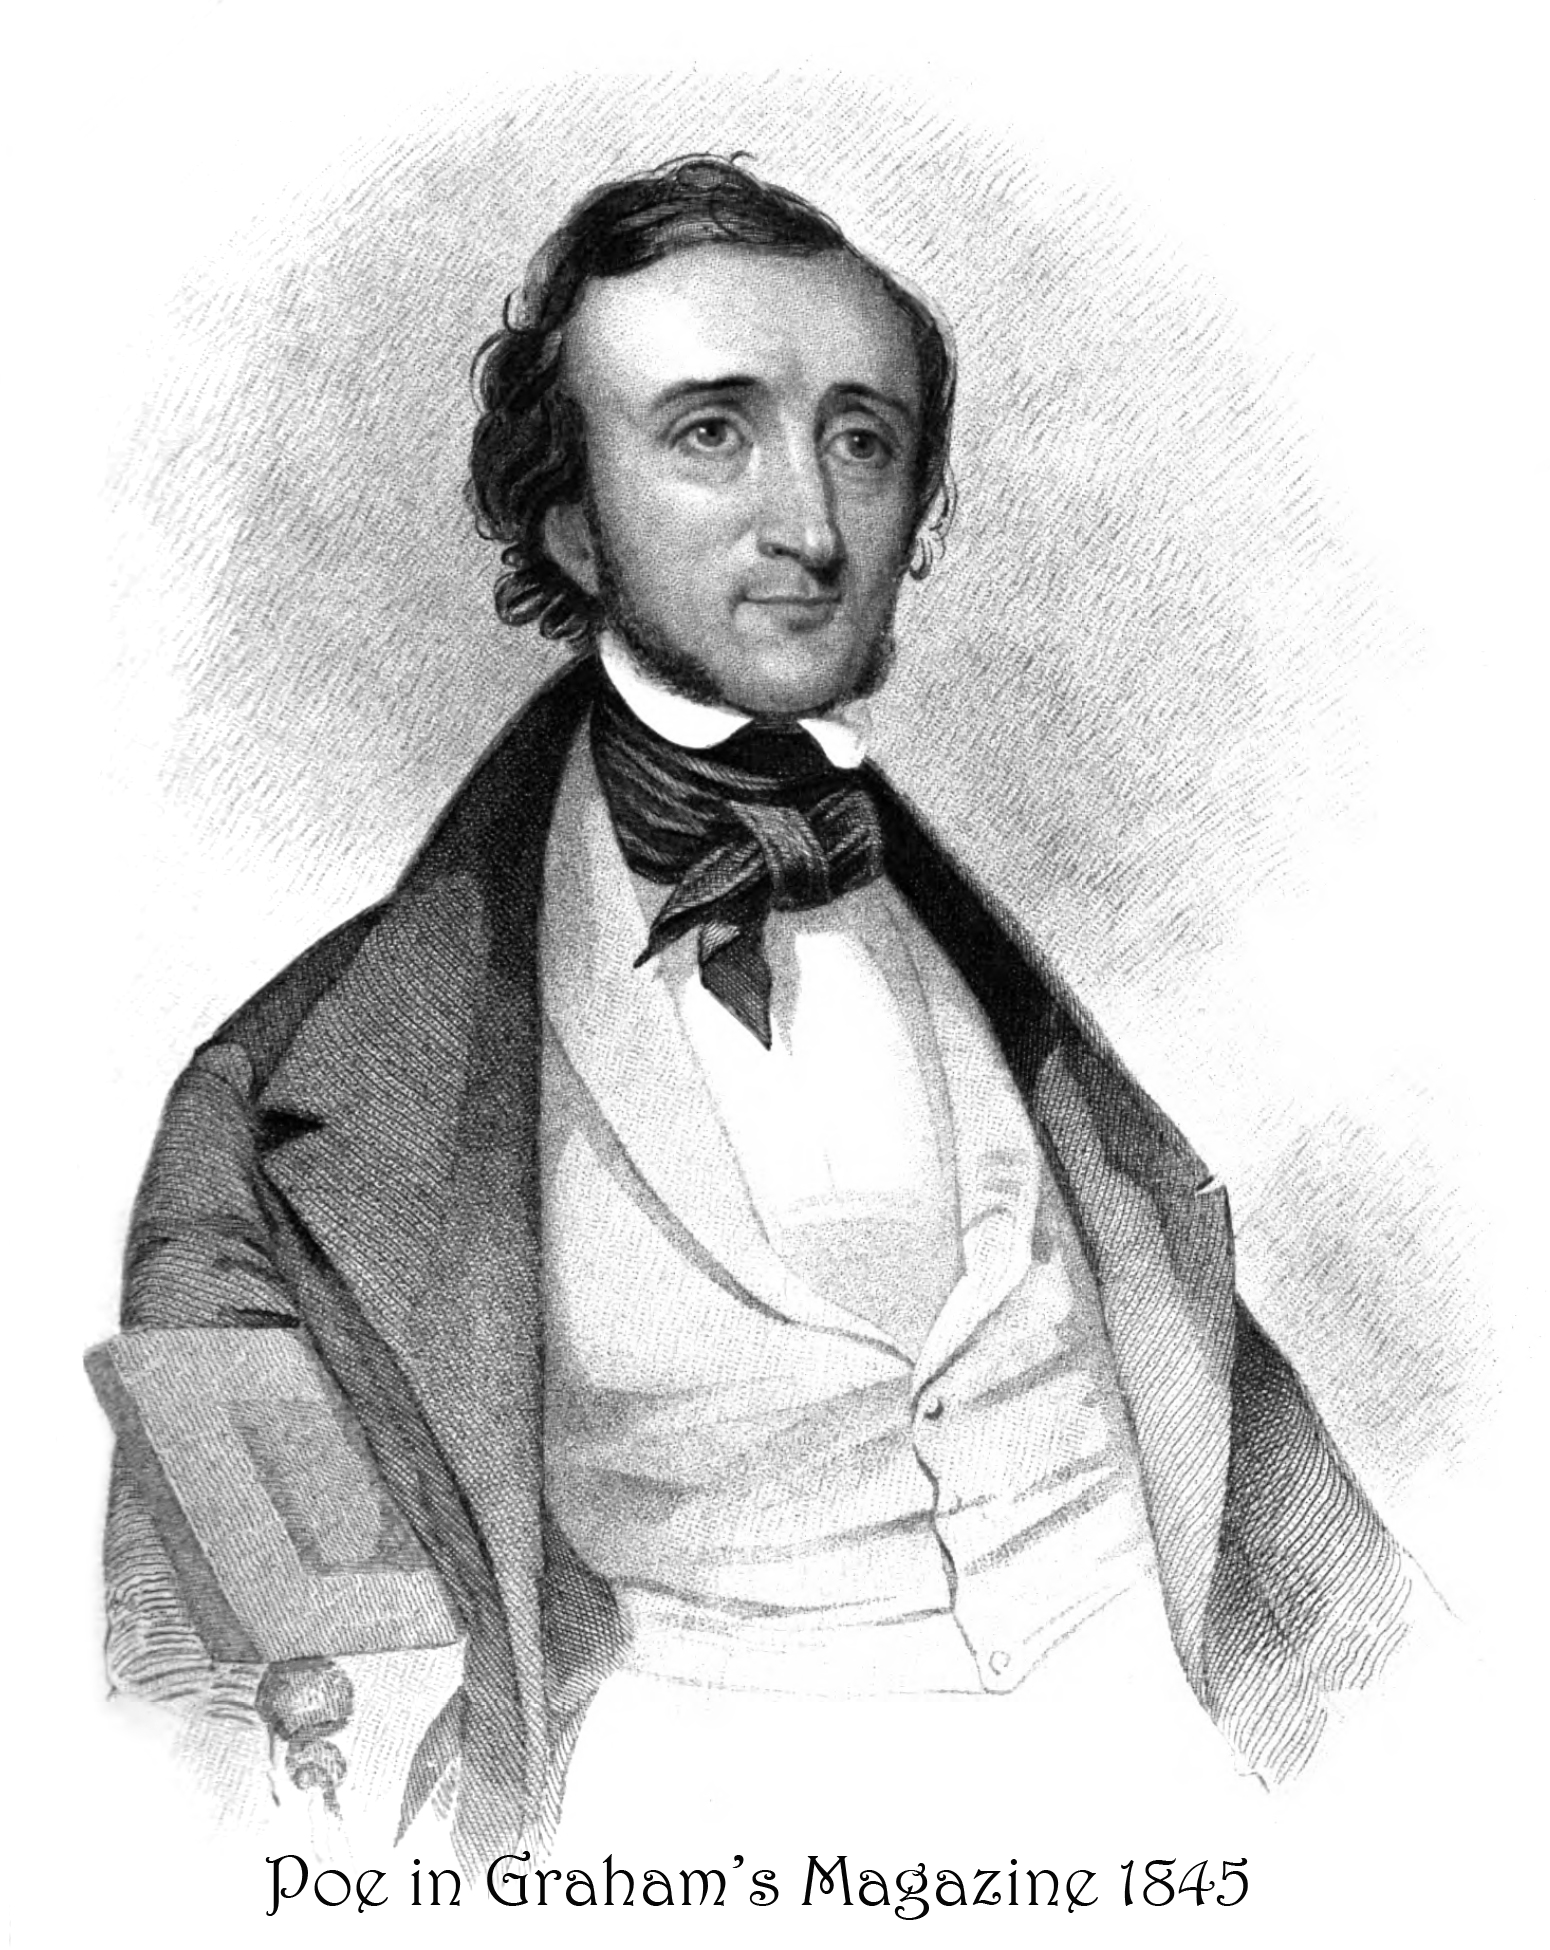 Poe in 1845